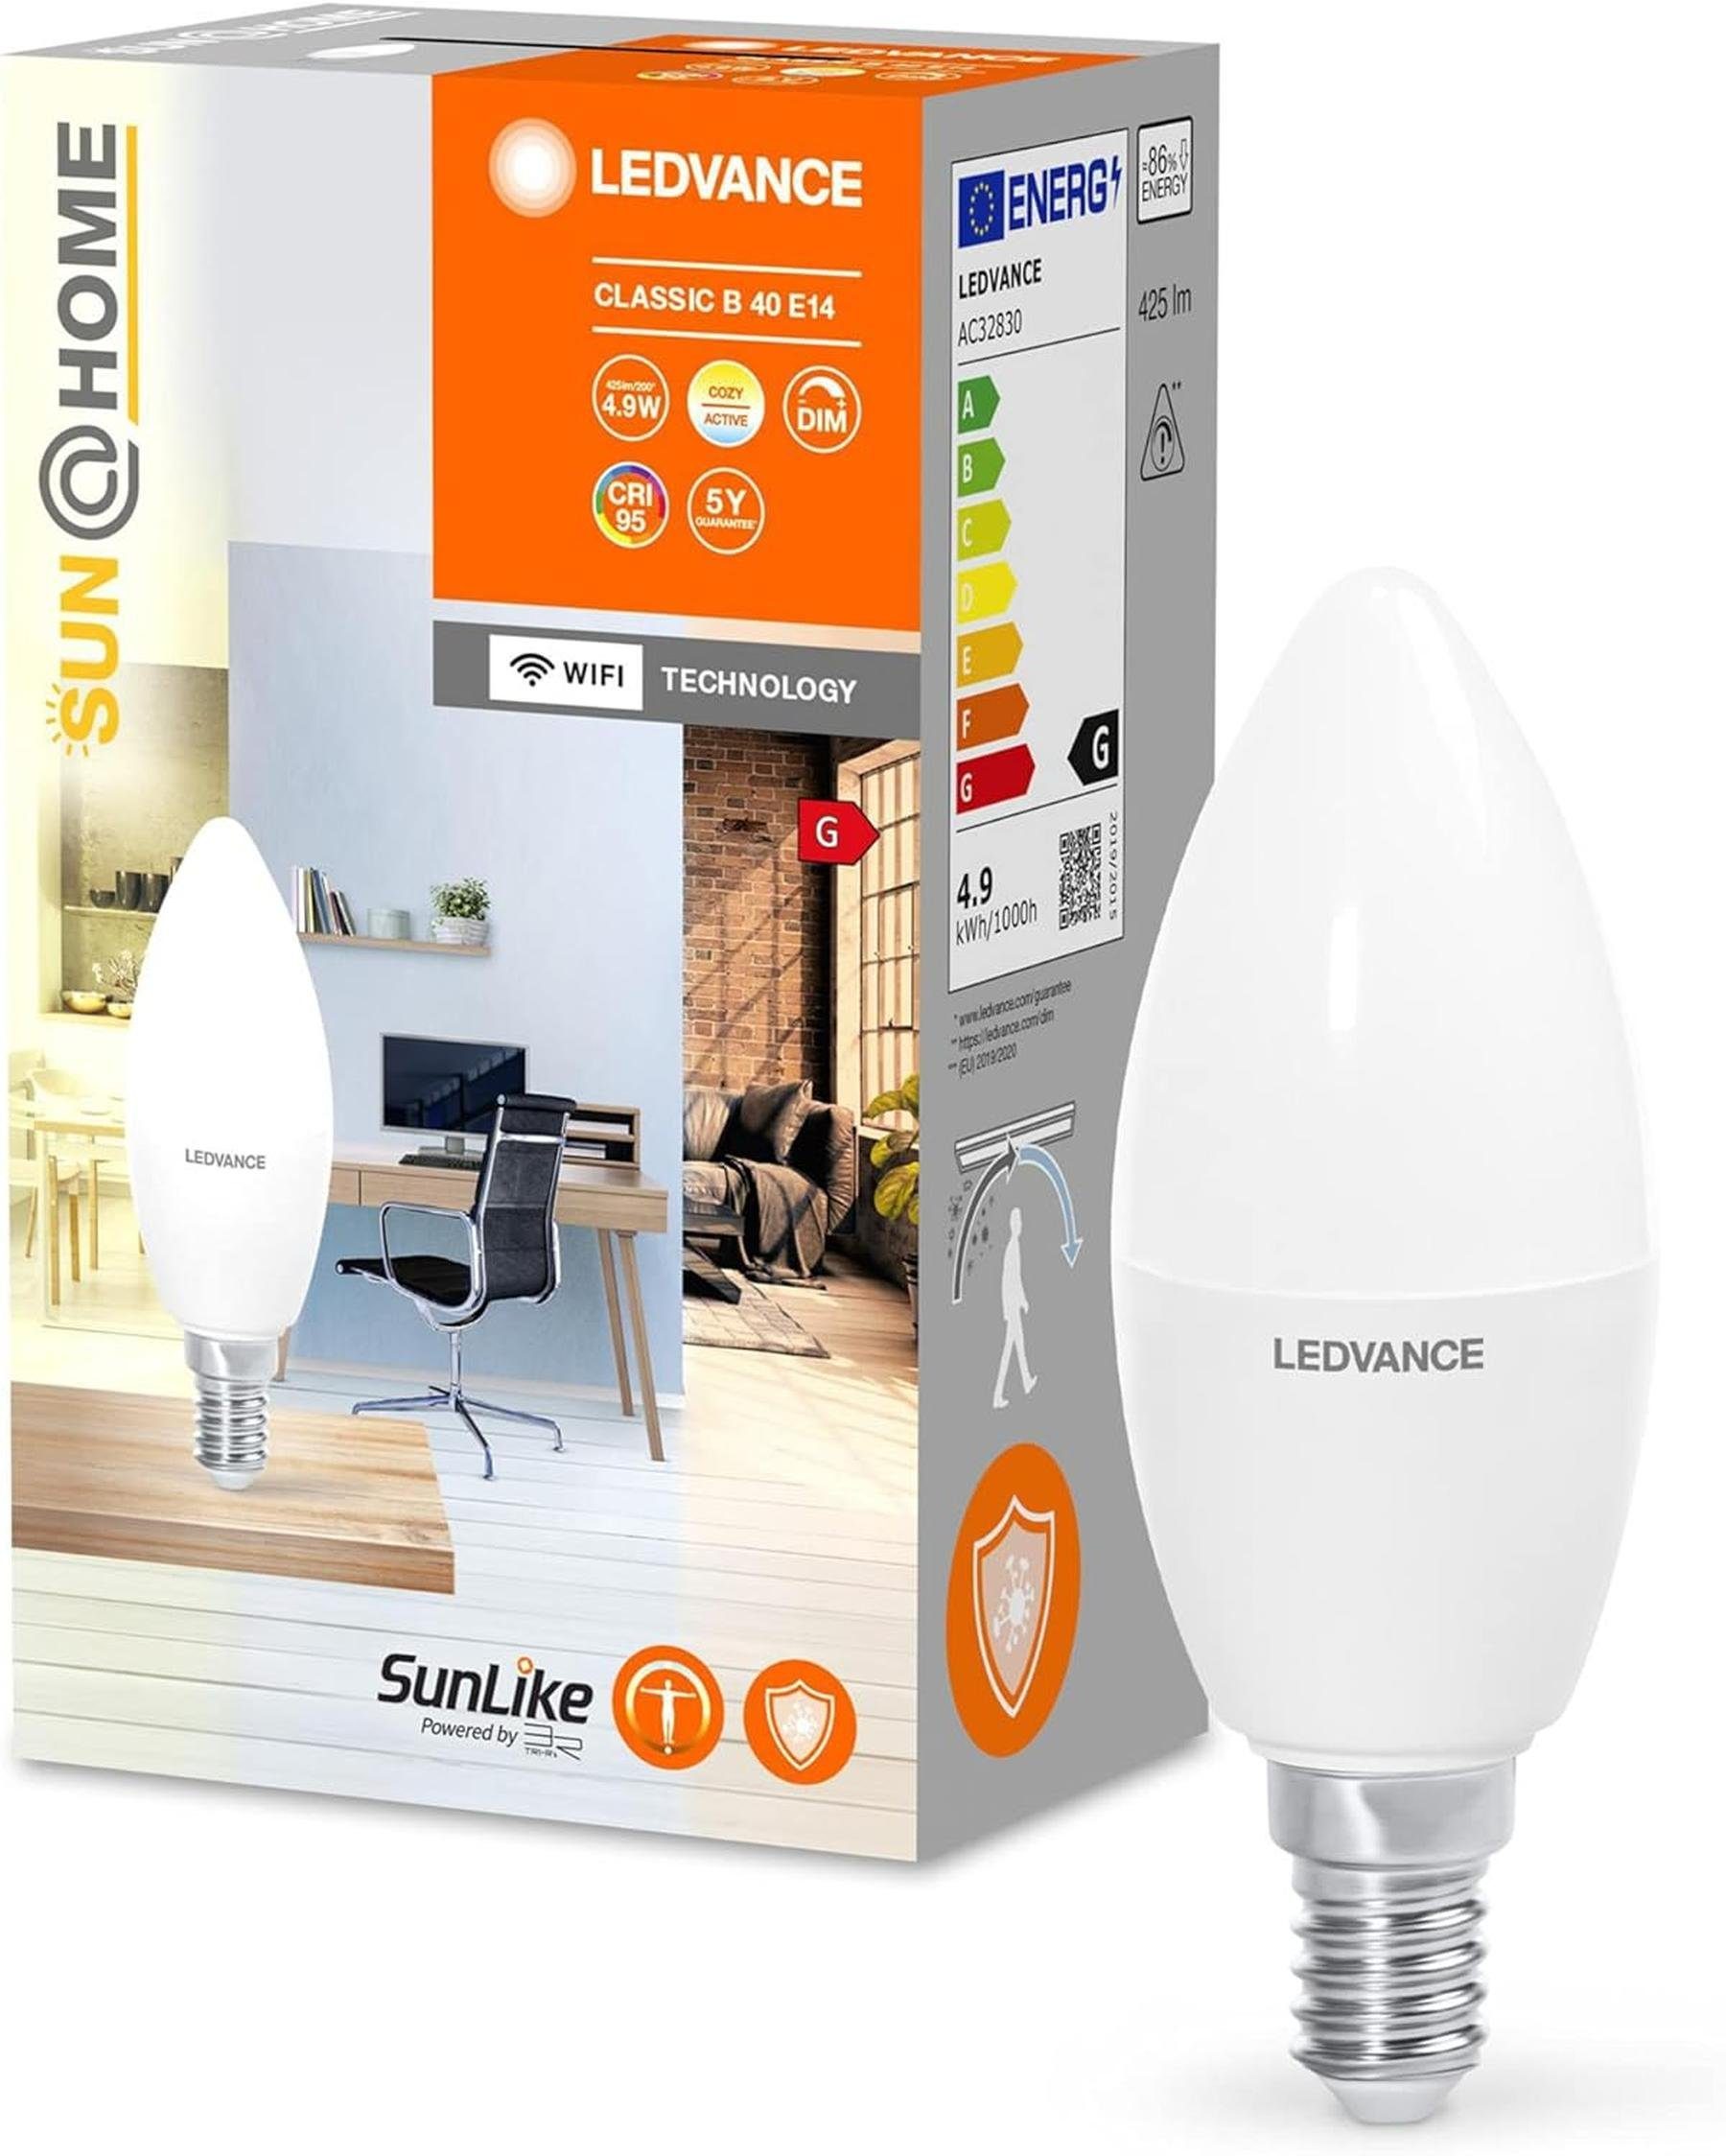 Ledvance LED-Leuchtmittel Smart E14 CRI, dimmbar 5000K E14, LED White, Kerze Glühbirne Dimmbar, Energiesparend, Mattiert, 425lm Farbwechsel, App-Steuerung 4,9W Tunable